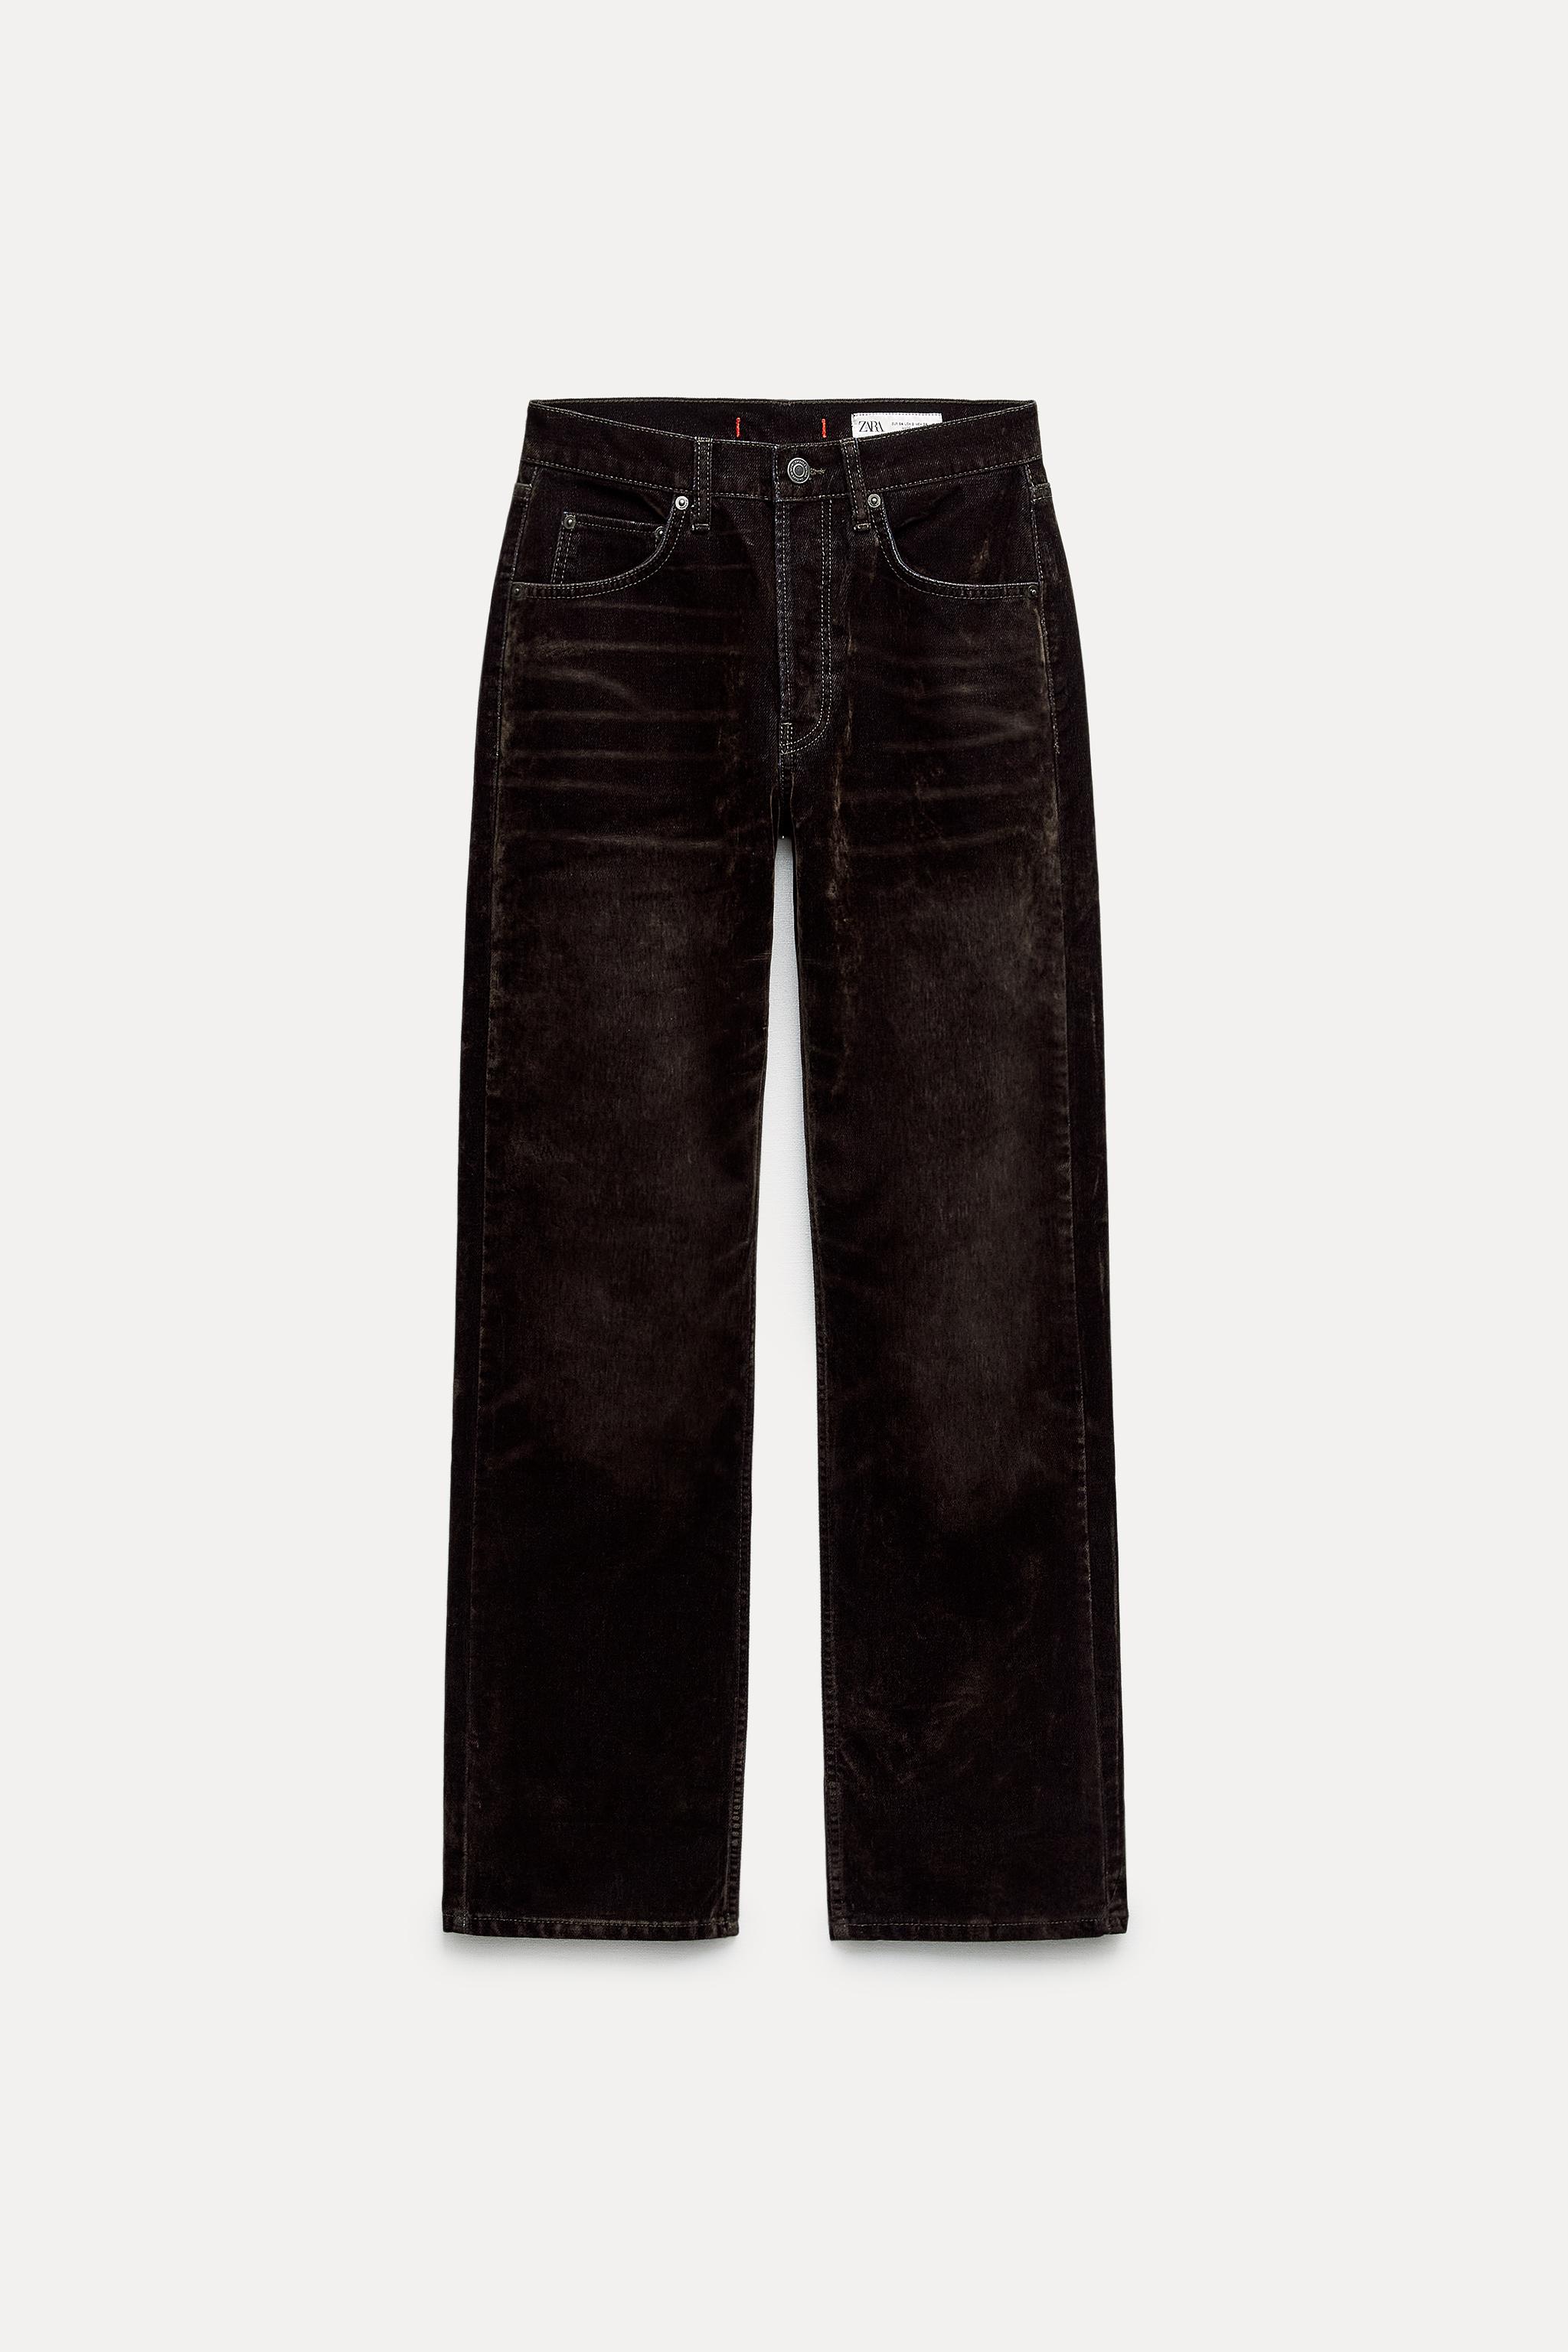 NWOT Size 22 J BRAND Black Velvet Mid-Rise Rail Jeans Women's Pants  #8112T635